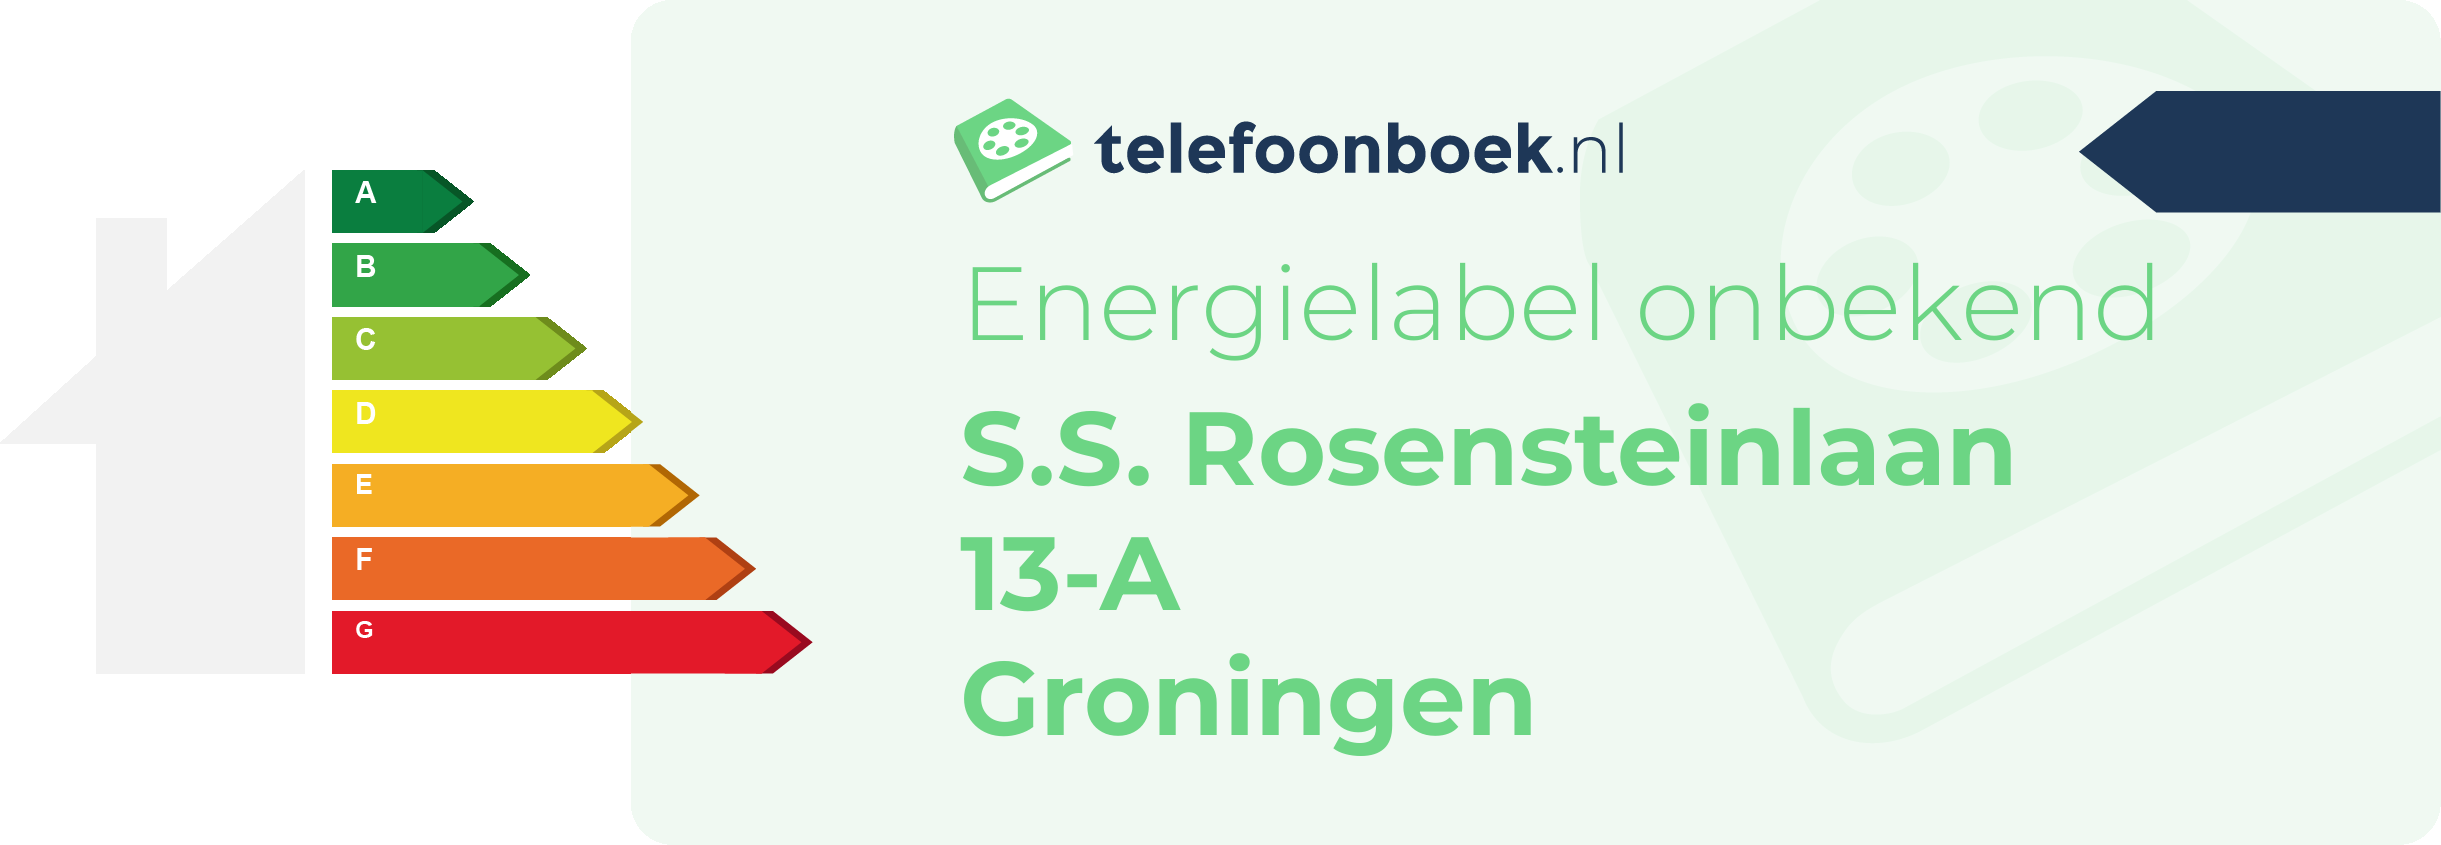 Energielabel S.S. Rosensteinlaan 13-A Groningen